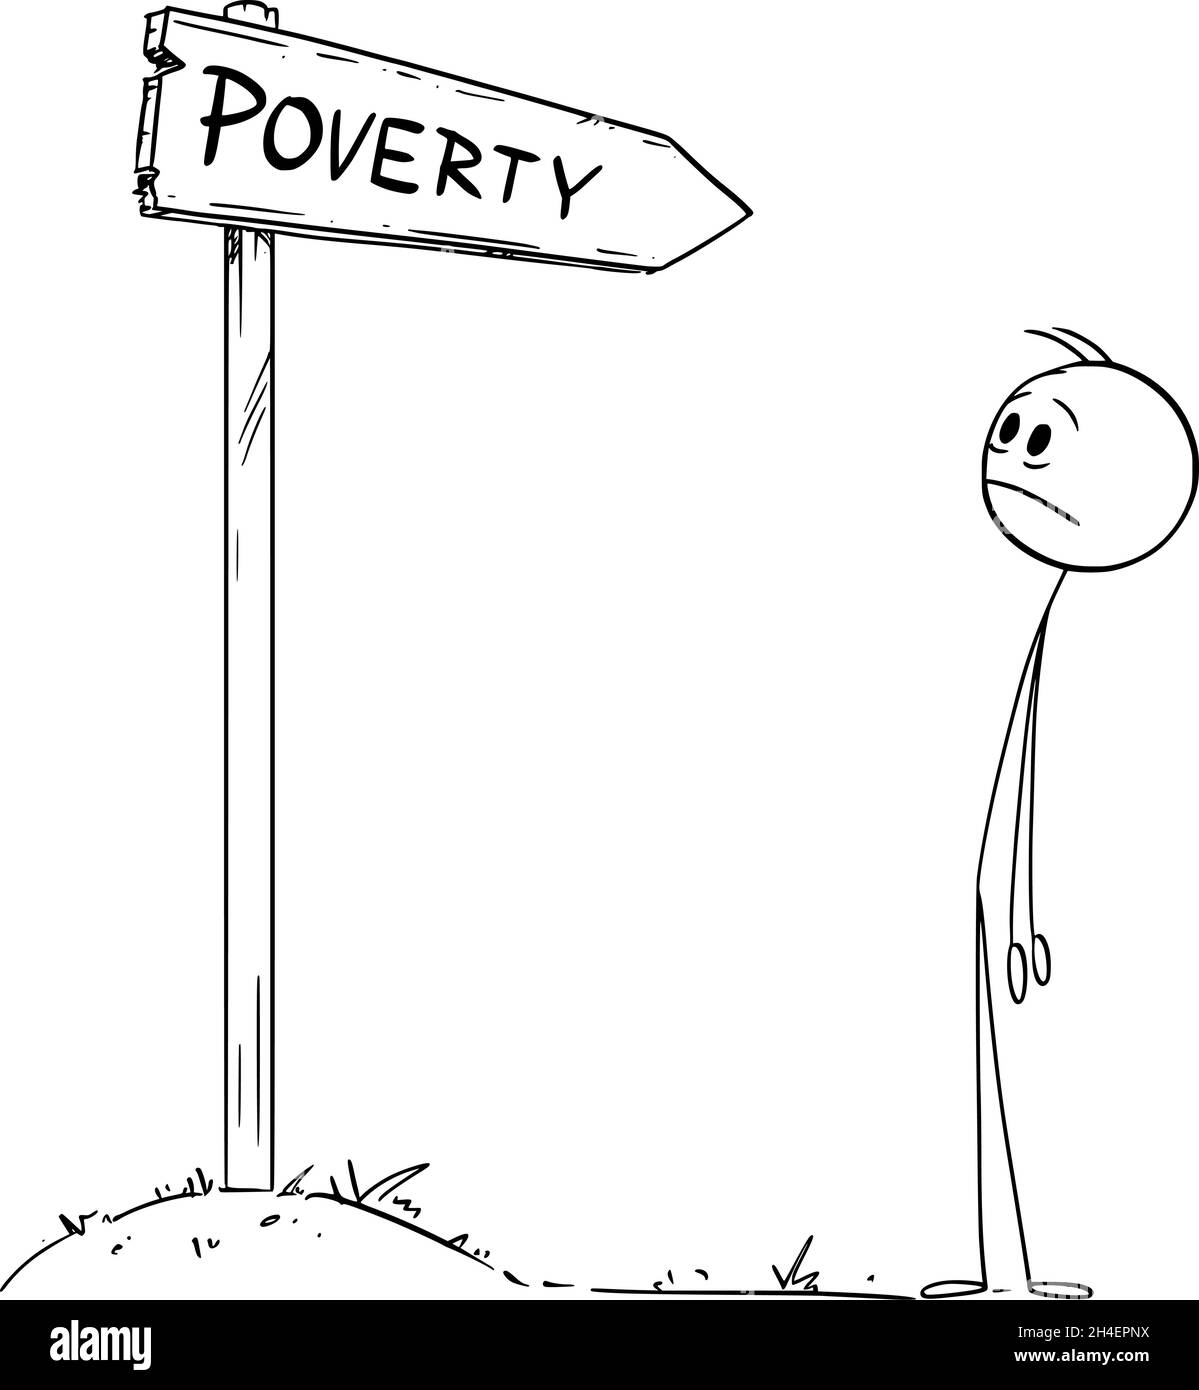 Persona che guarda povertà strada traffico freccia segno, Vector Cartoon Stick Figure Illustrazione Illustrazione Vettoriale